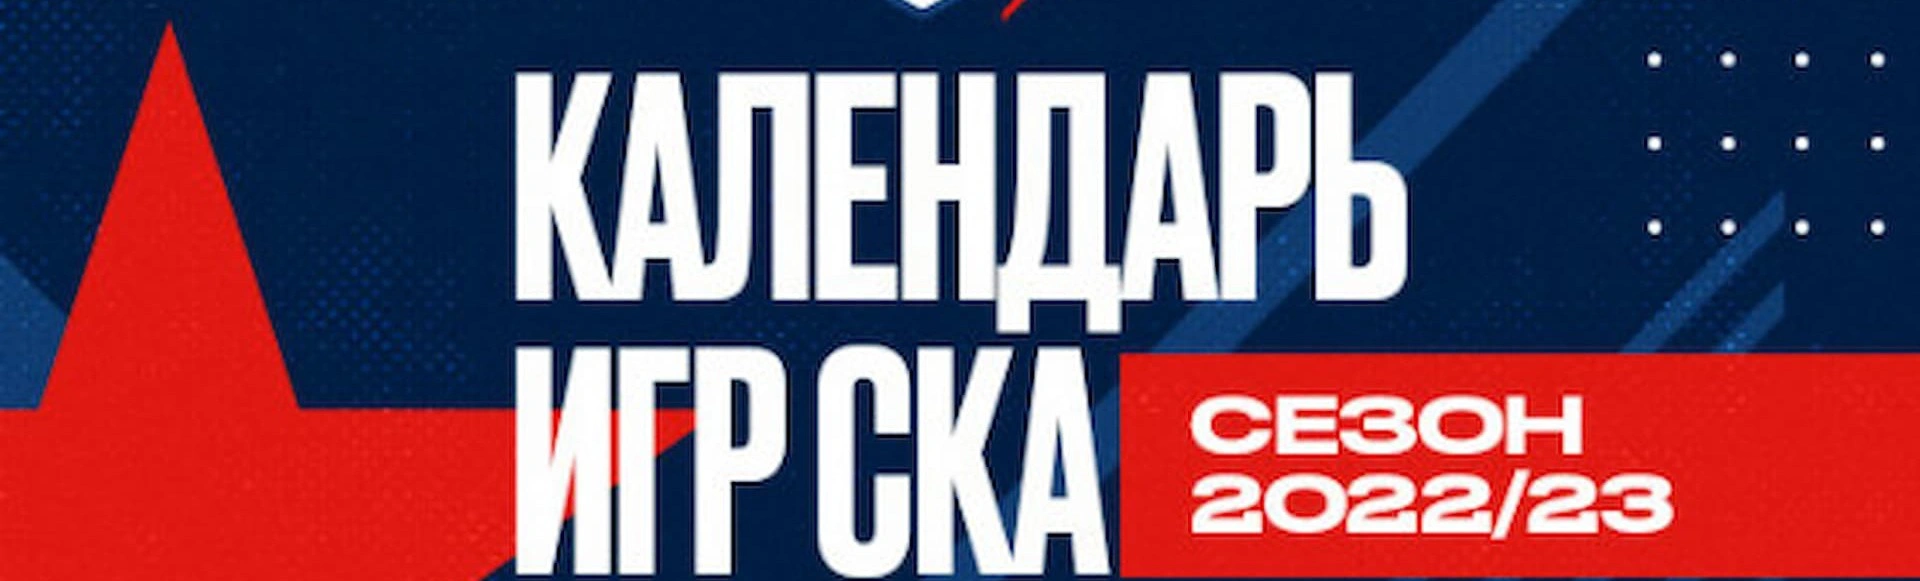 Опубликован календарь матчей КХЛ на сезон 2022/23